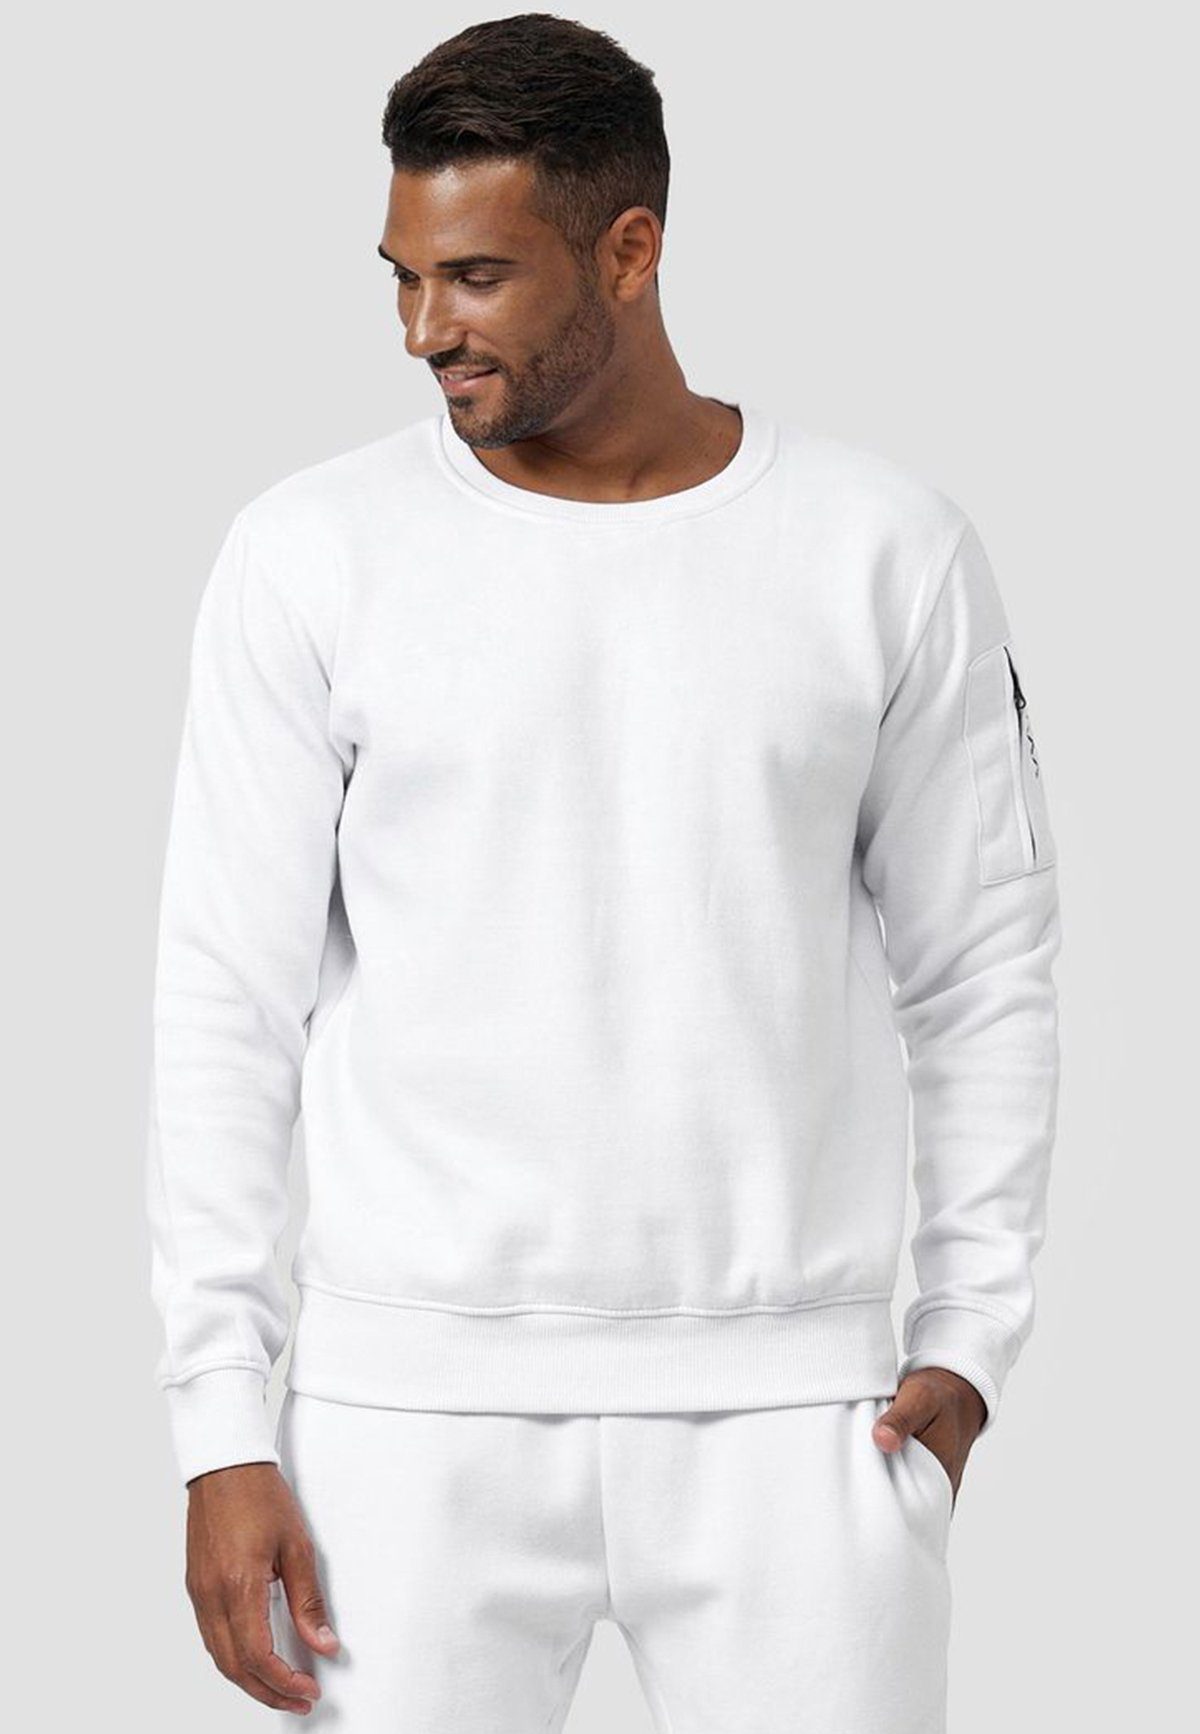 Kapuze ohne mit Armtasche Pullover Sweatshirt Sweatshirt in Egomaxx 4240 Weiß